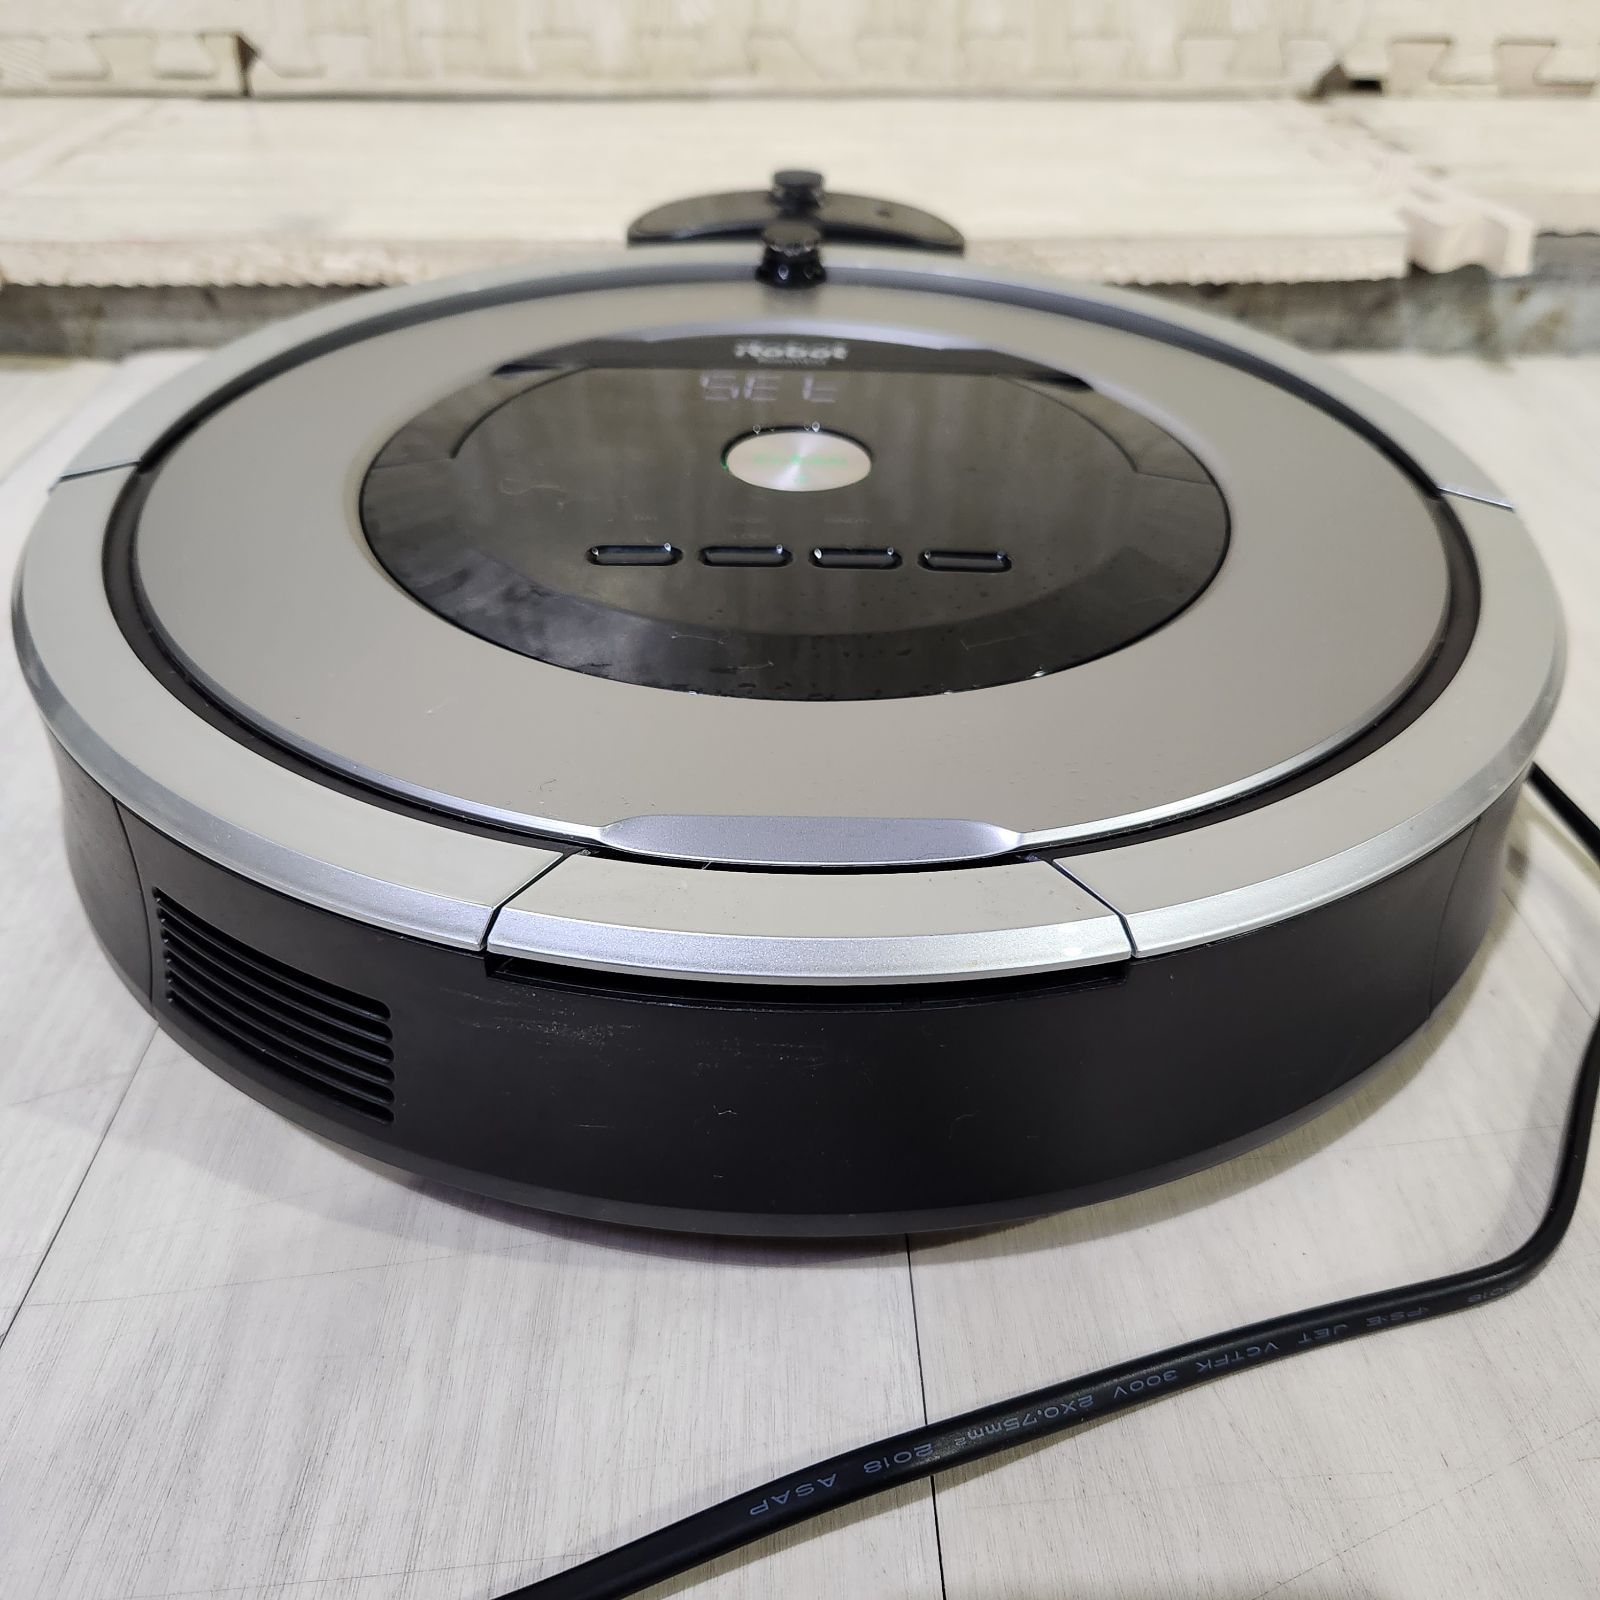 ロボット掃除機 iRobot Roomba 876 - 掃除機・クリーナー